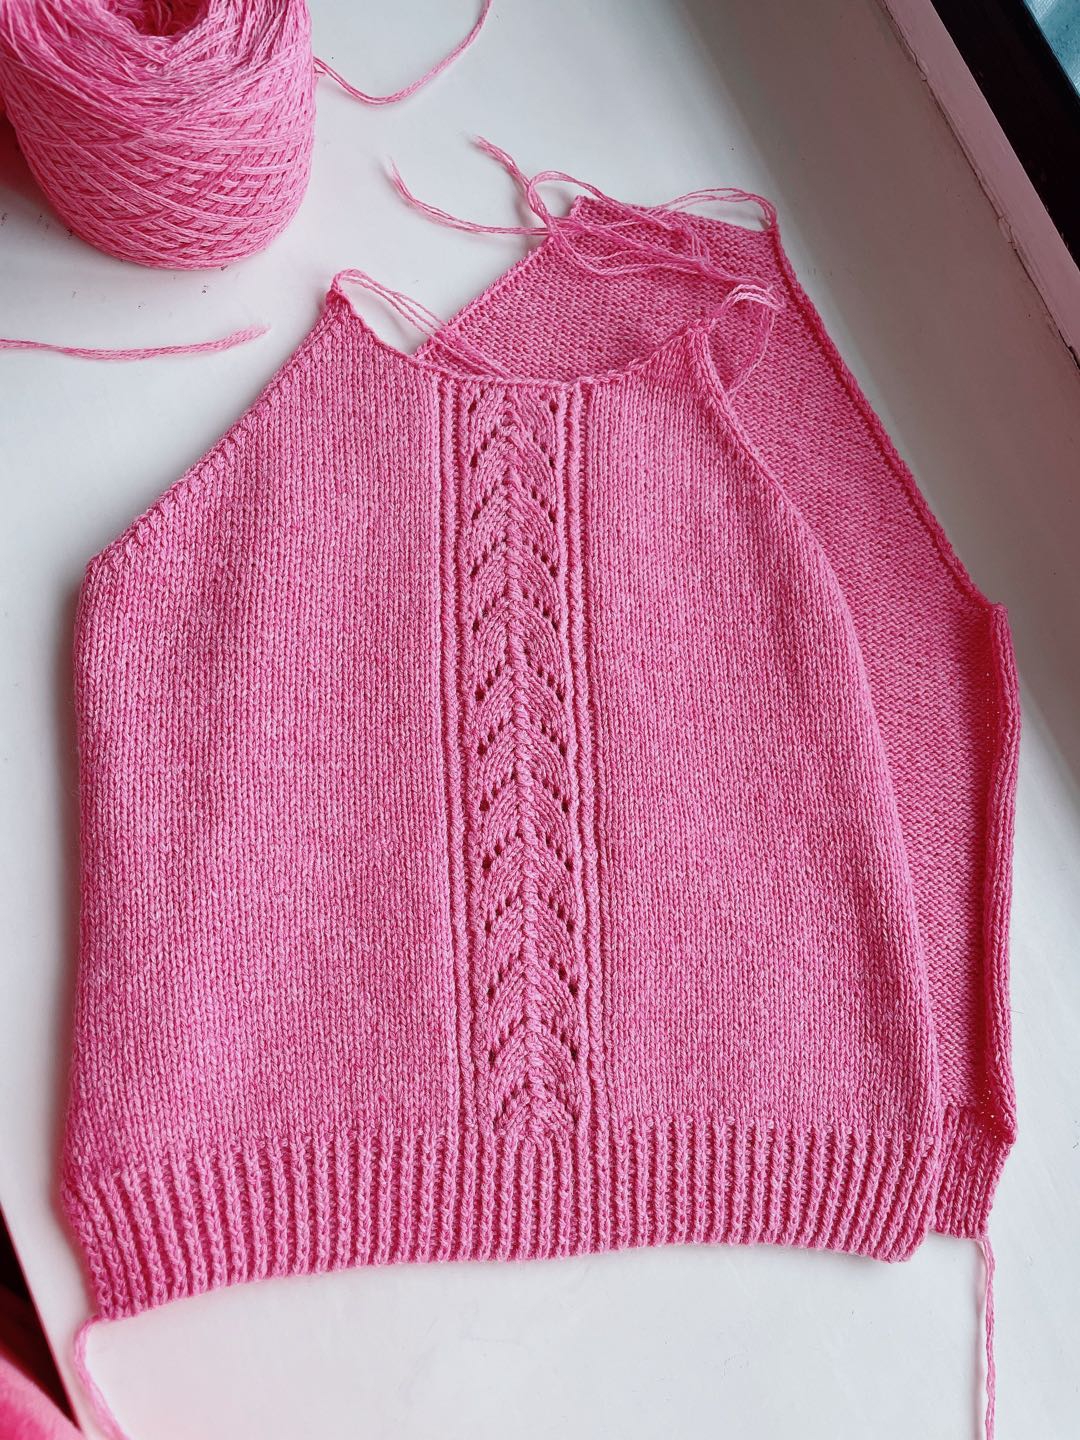 怎么织婴儿毛衣_织婴儿毛衣的教程